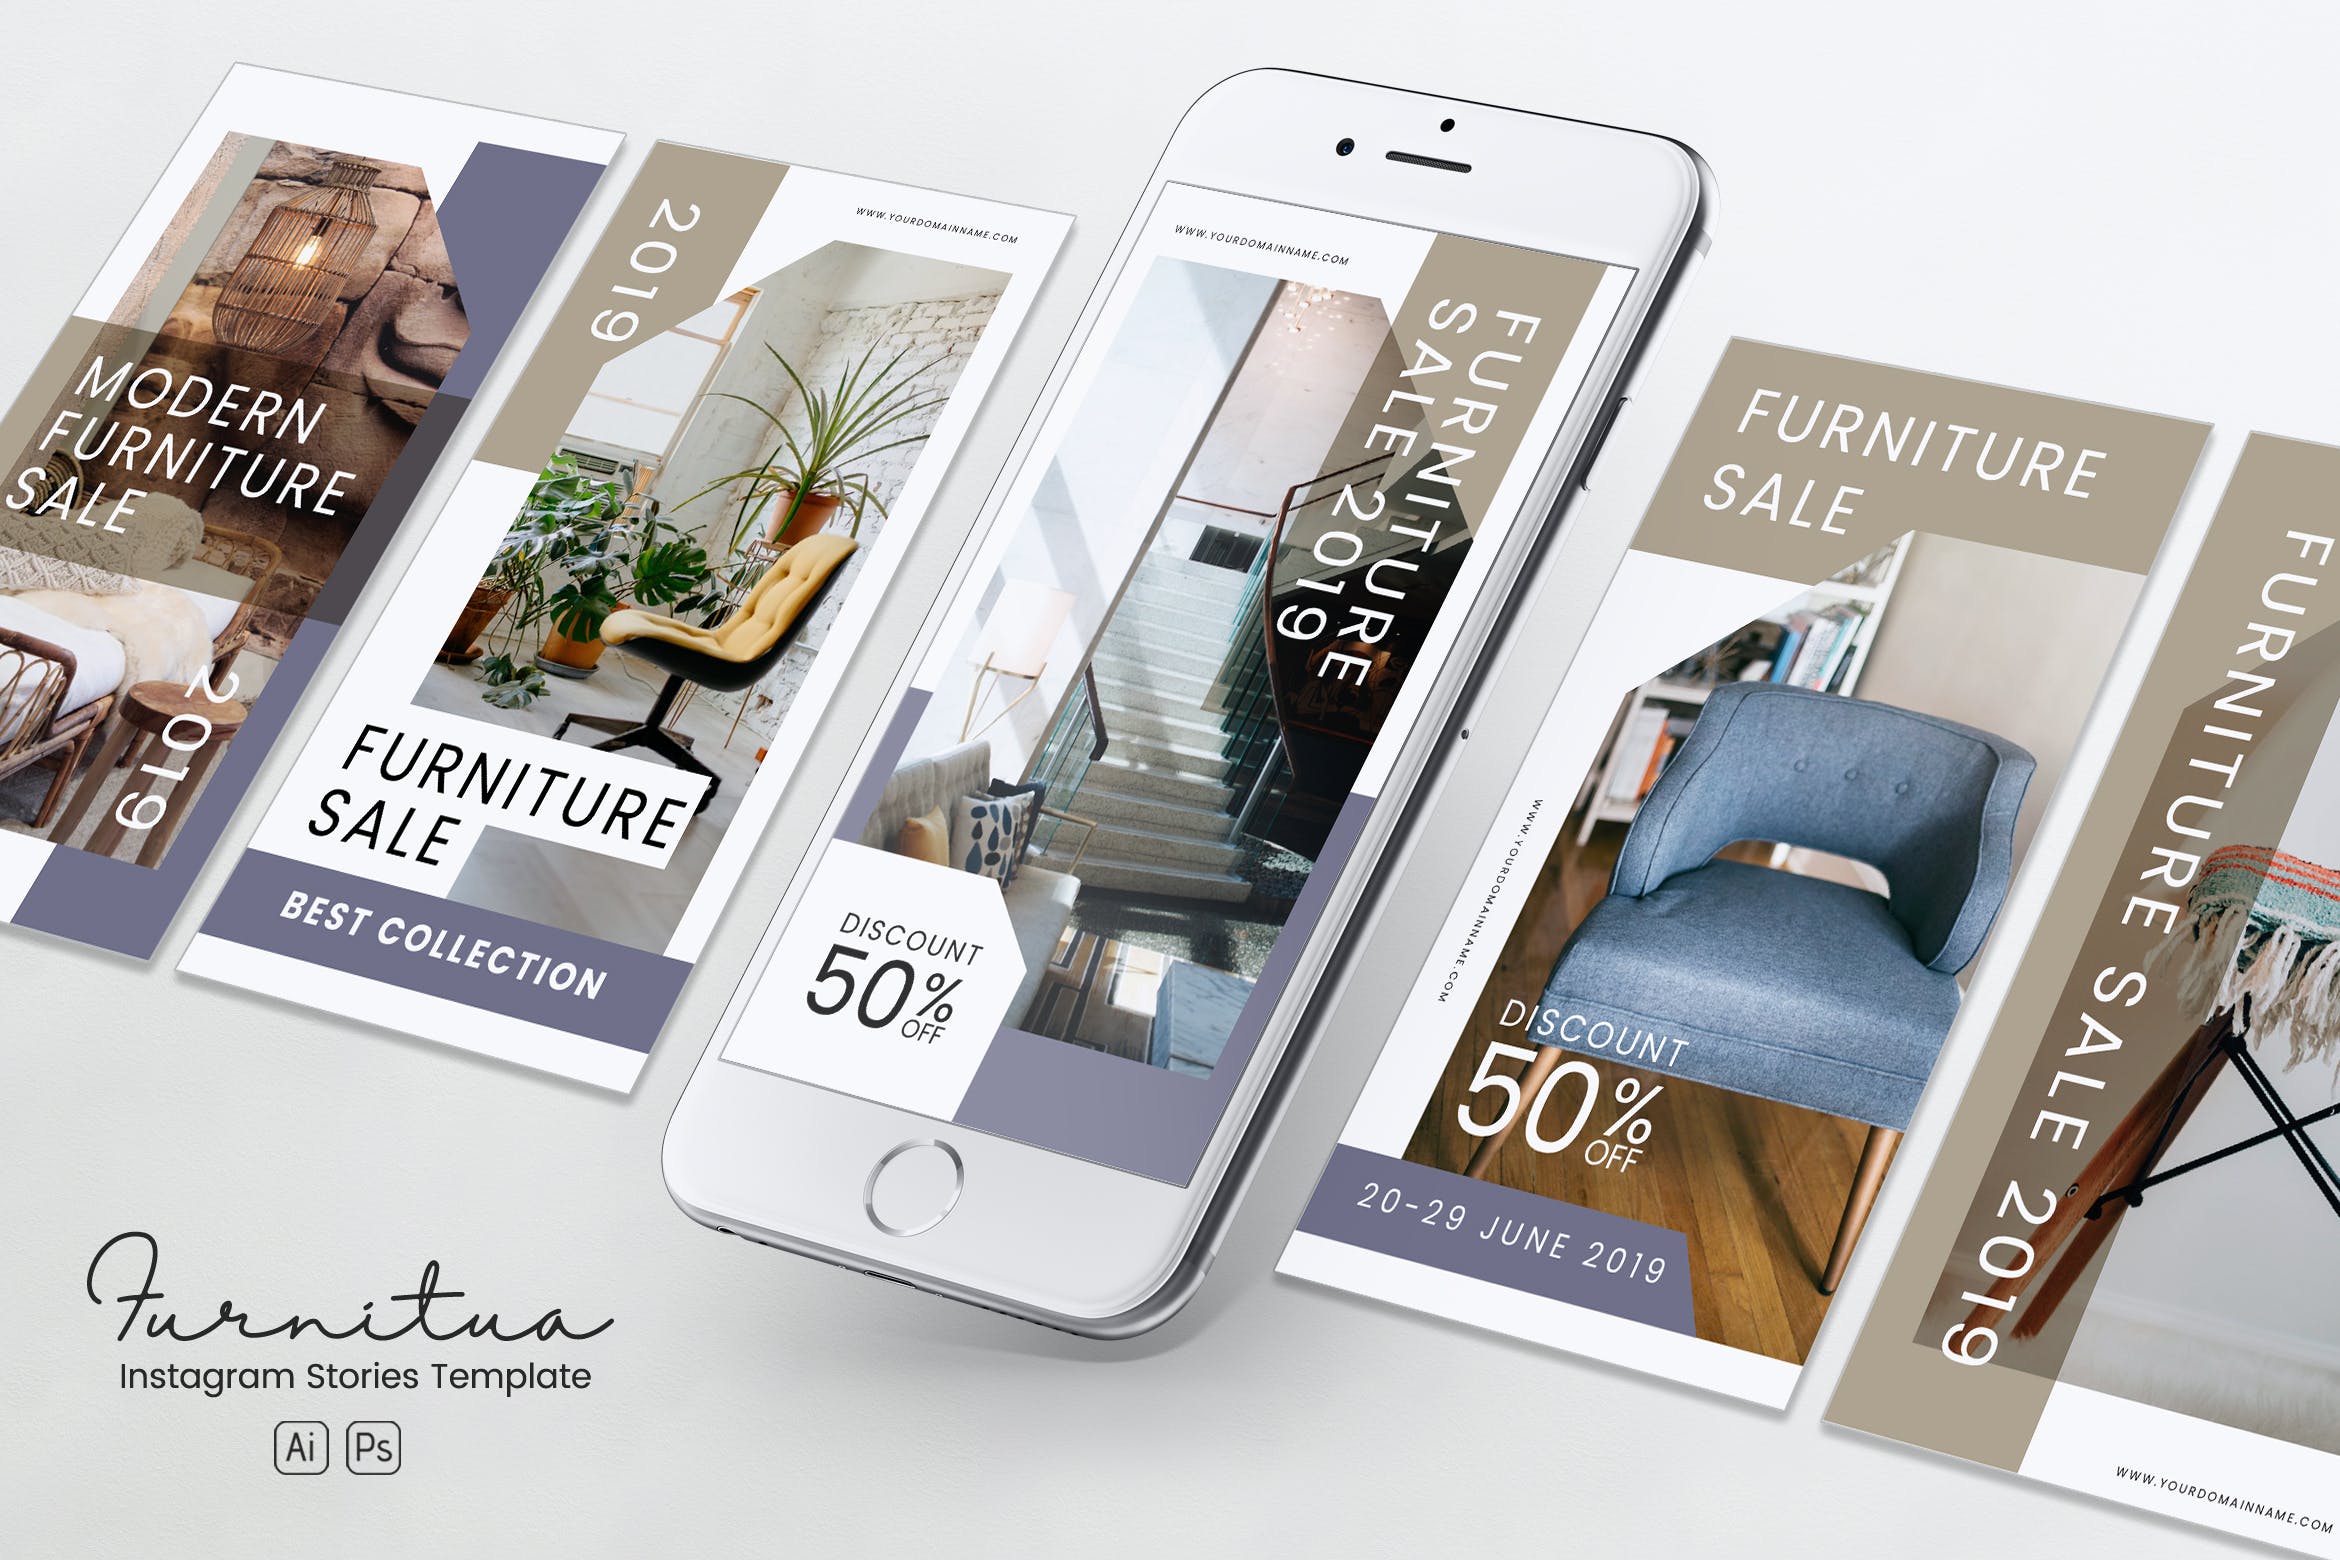 家具品牌故事推广Instagram社交推广设计素材PSD&AI模板非凡图库精选 Furniture Instagram Stories PSD & AI Template插图